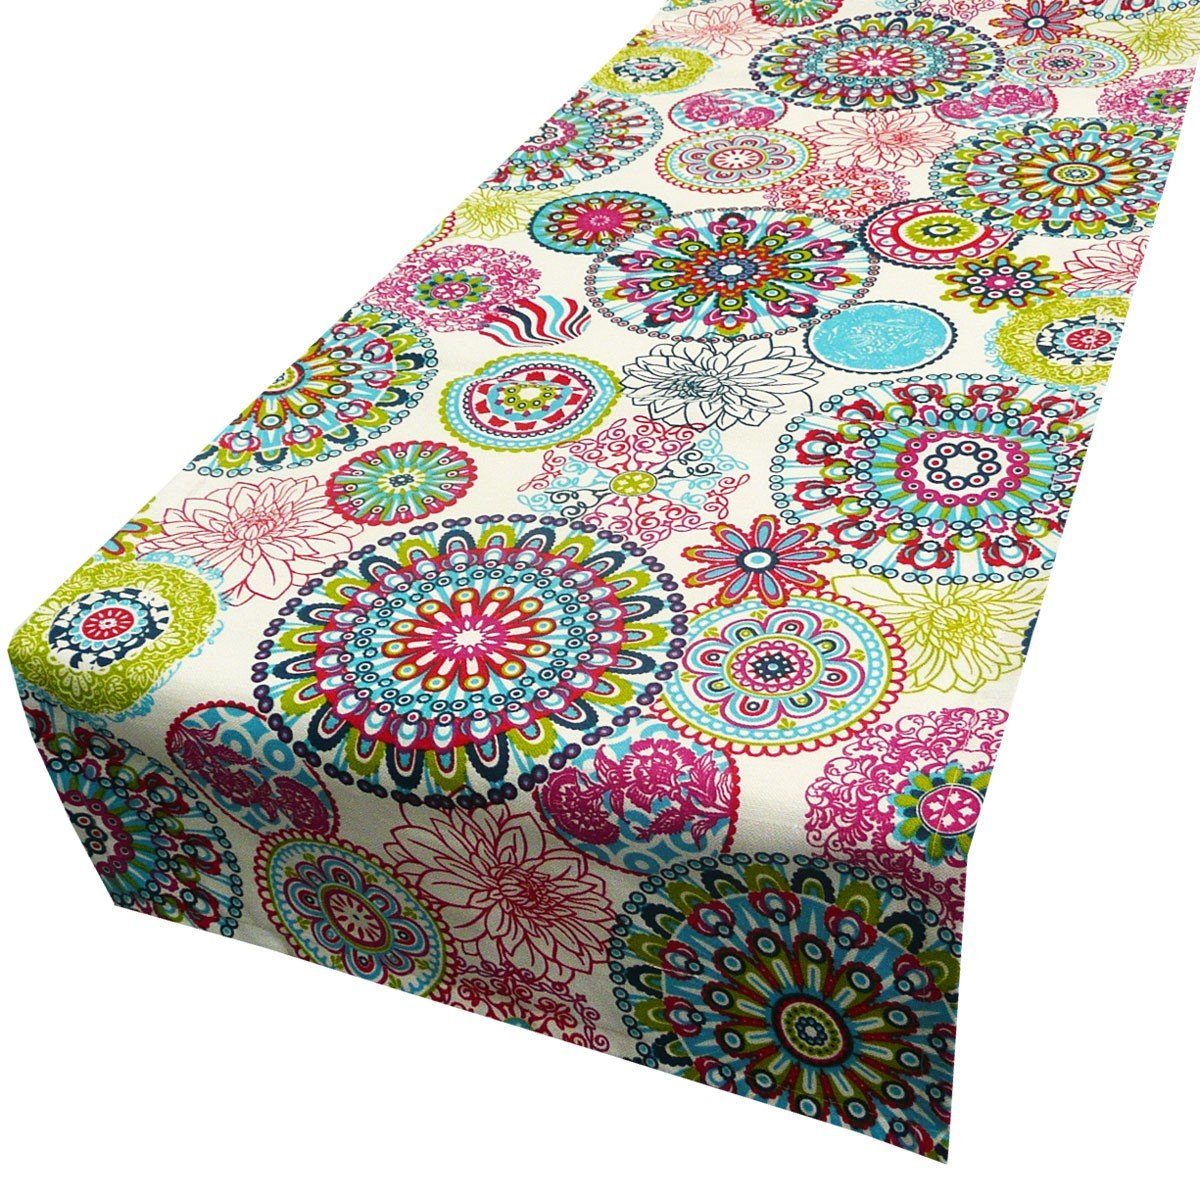 SCHÖNER LEBEN. Tischläufer Schöner Leben Tischläufer Blumen Mandala bunt 40x160cm, handmade | Tischläufer